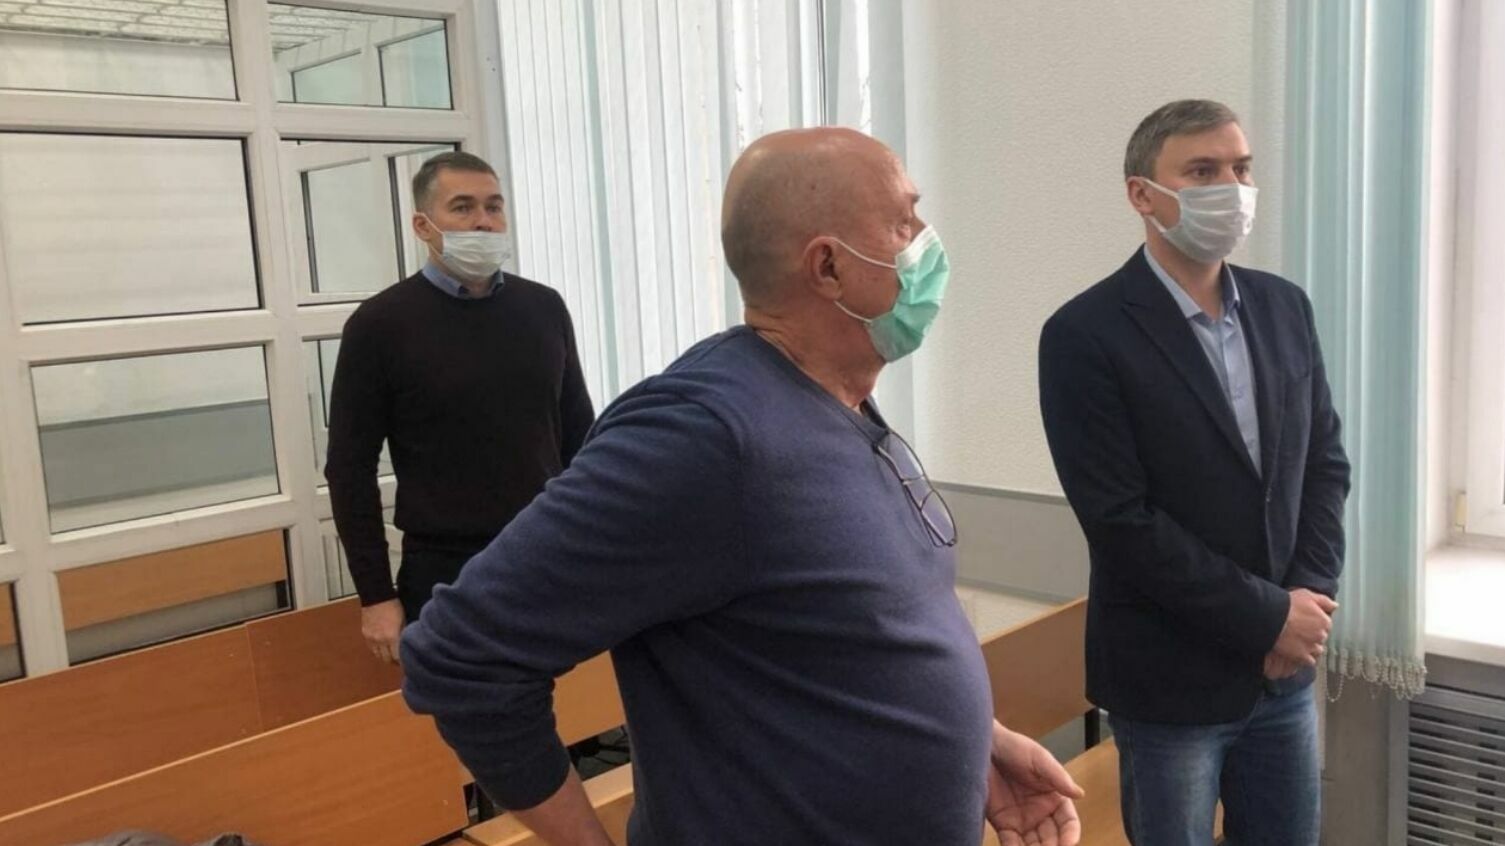 Прокуратура и осужденные обжалуют приговор по делу о гибели пяти человек в пермском мини-отеле «Карамель»